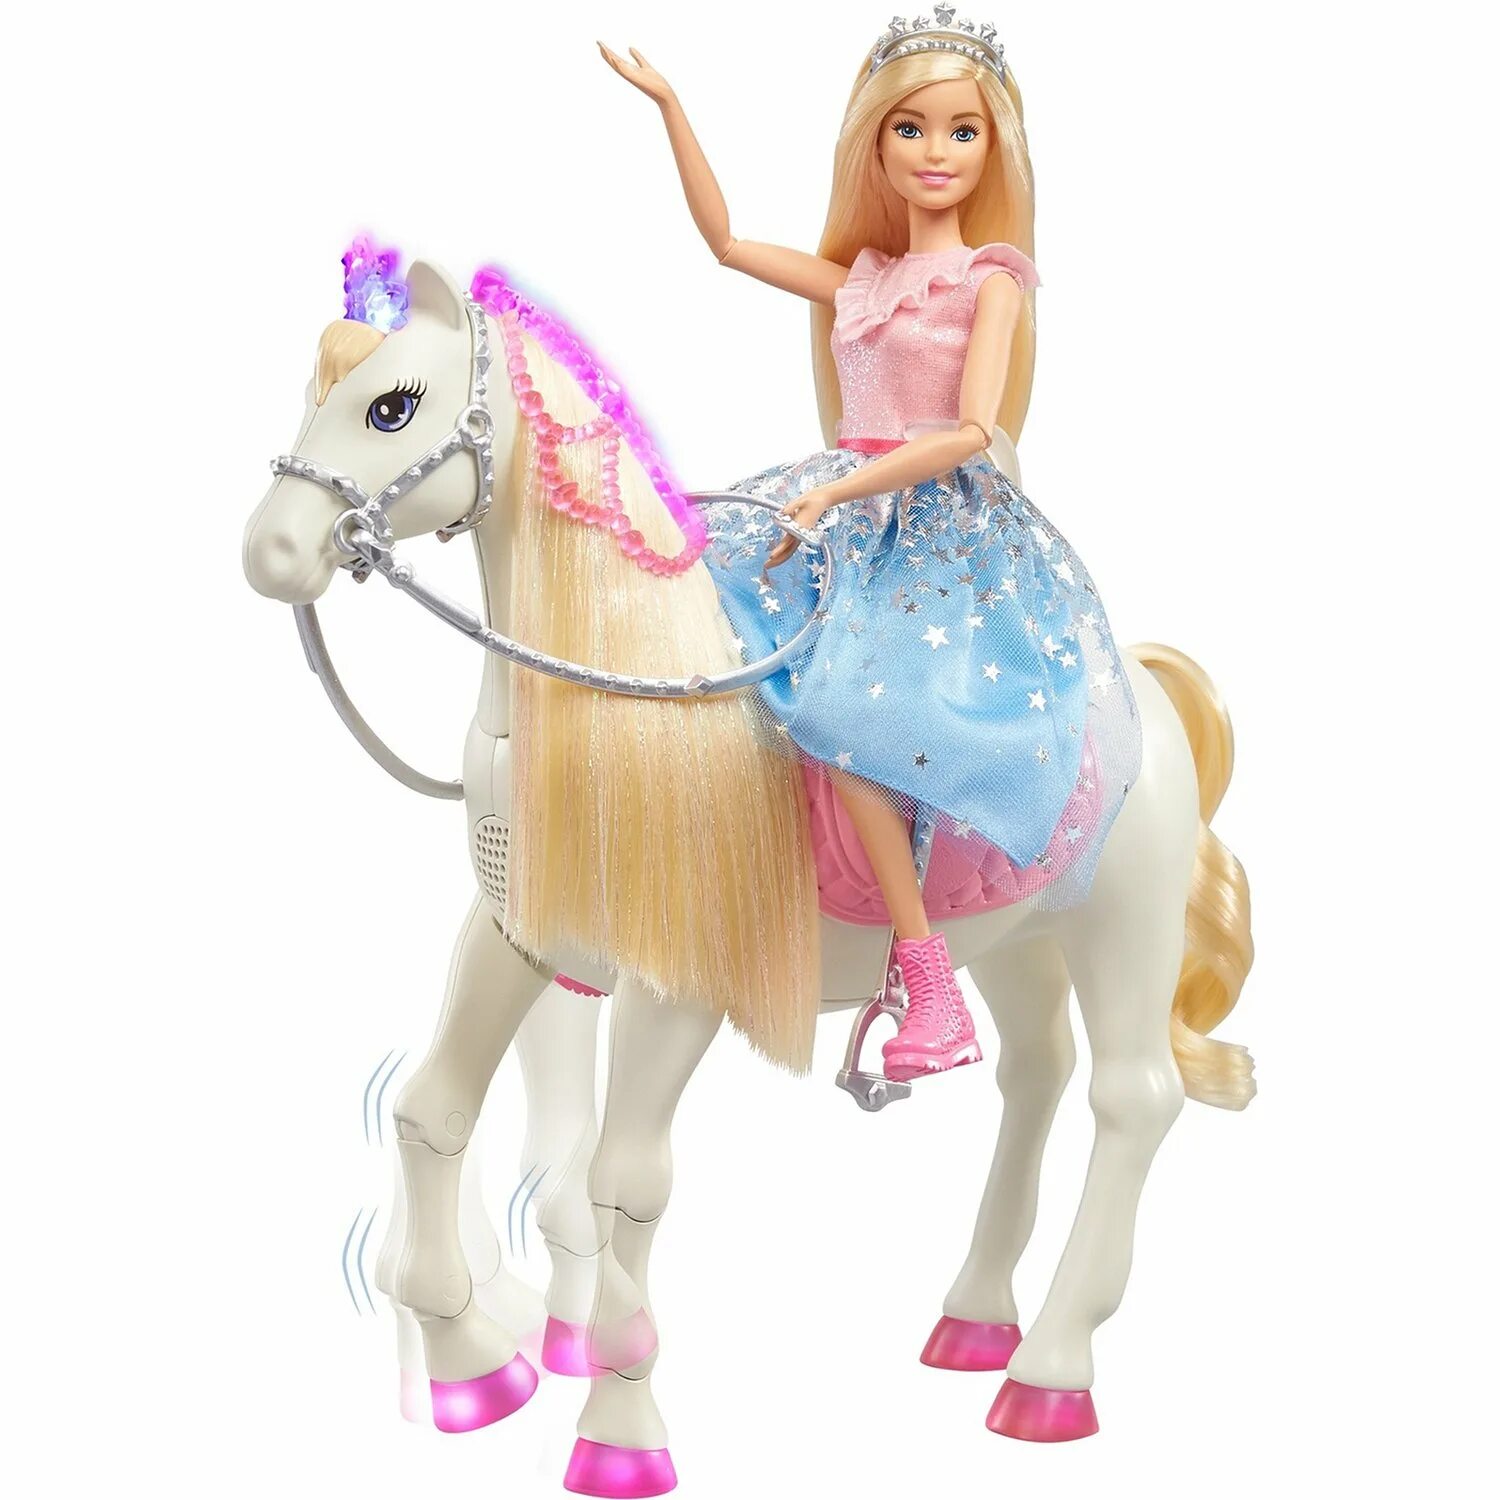 Лошадки принцессы. Кукла Barbie Princess Adventure на лошади, gml79. Кукла Барби принцесса с лошадью. Кукла Барби принцесса Эдвенчер. Кукла Barbie семья приключения принцессы в синей пачке на лошади.